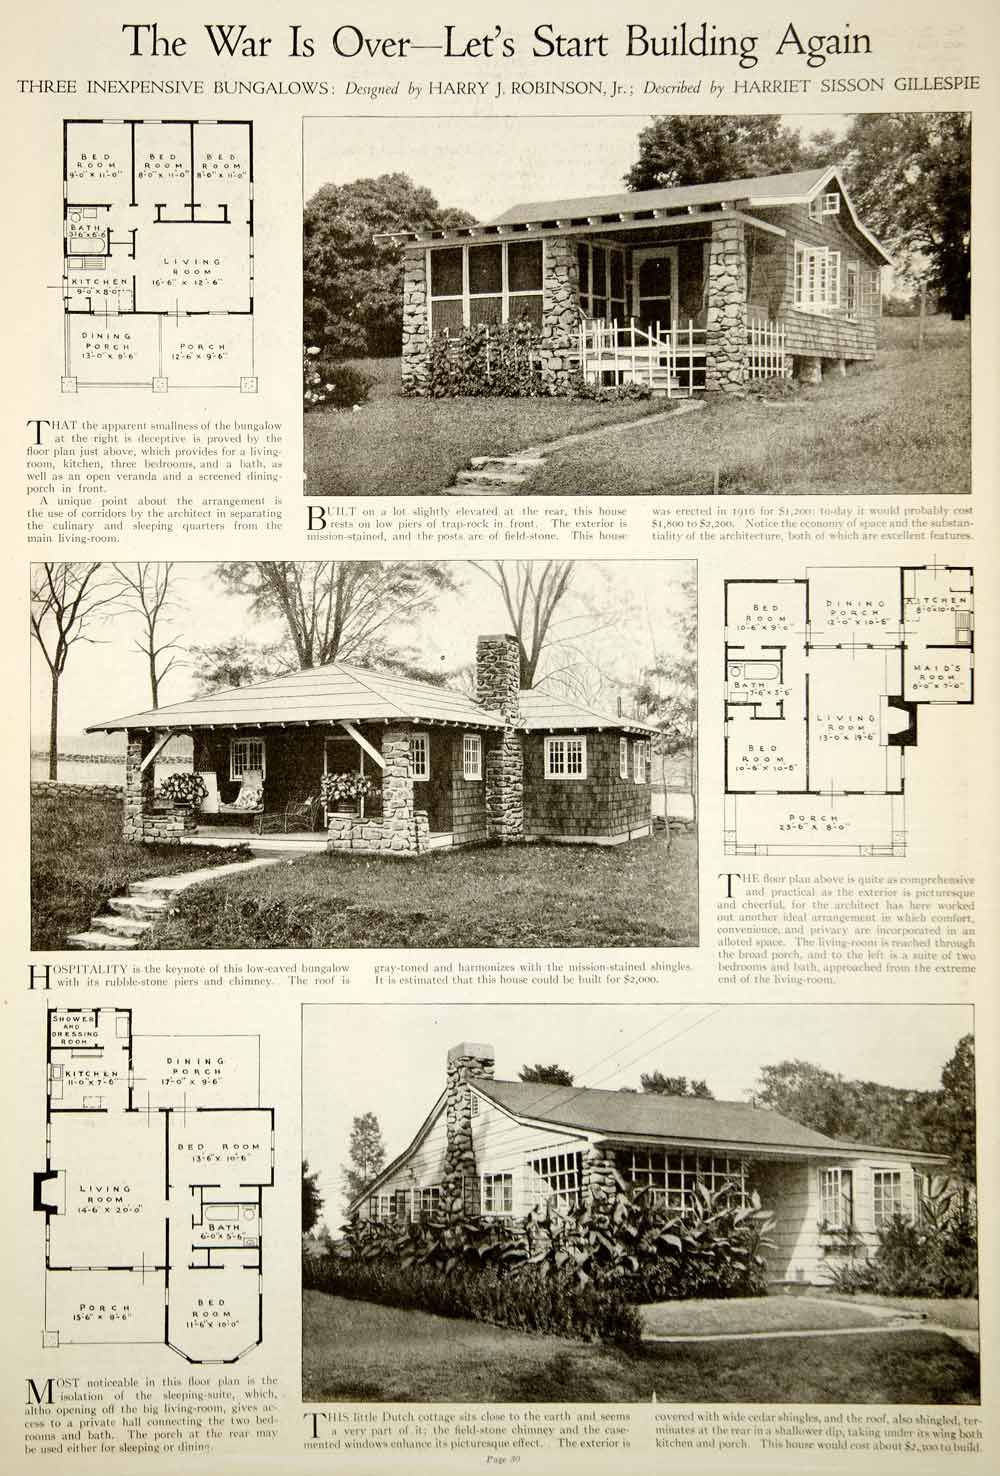 1919 Print Bungalow Home Architectural Design Floor Plans Harry J. Robinson Jr.